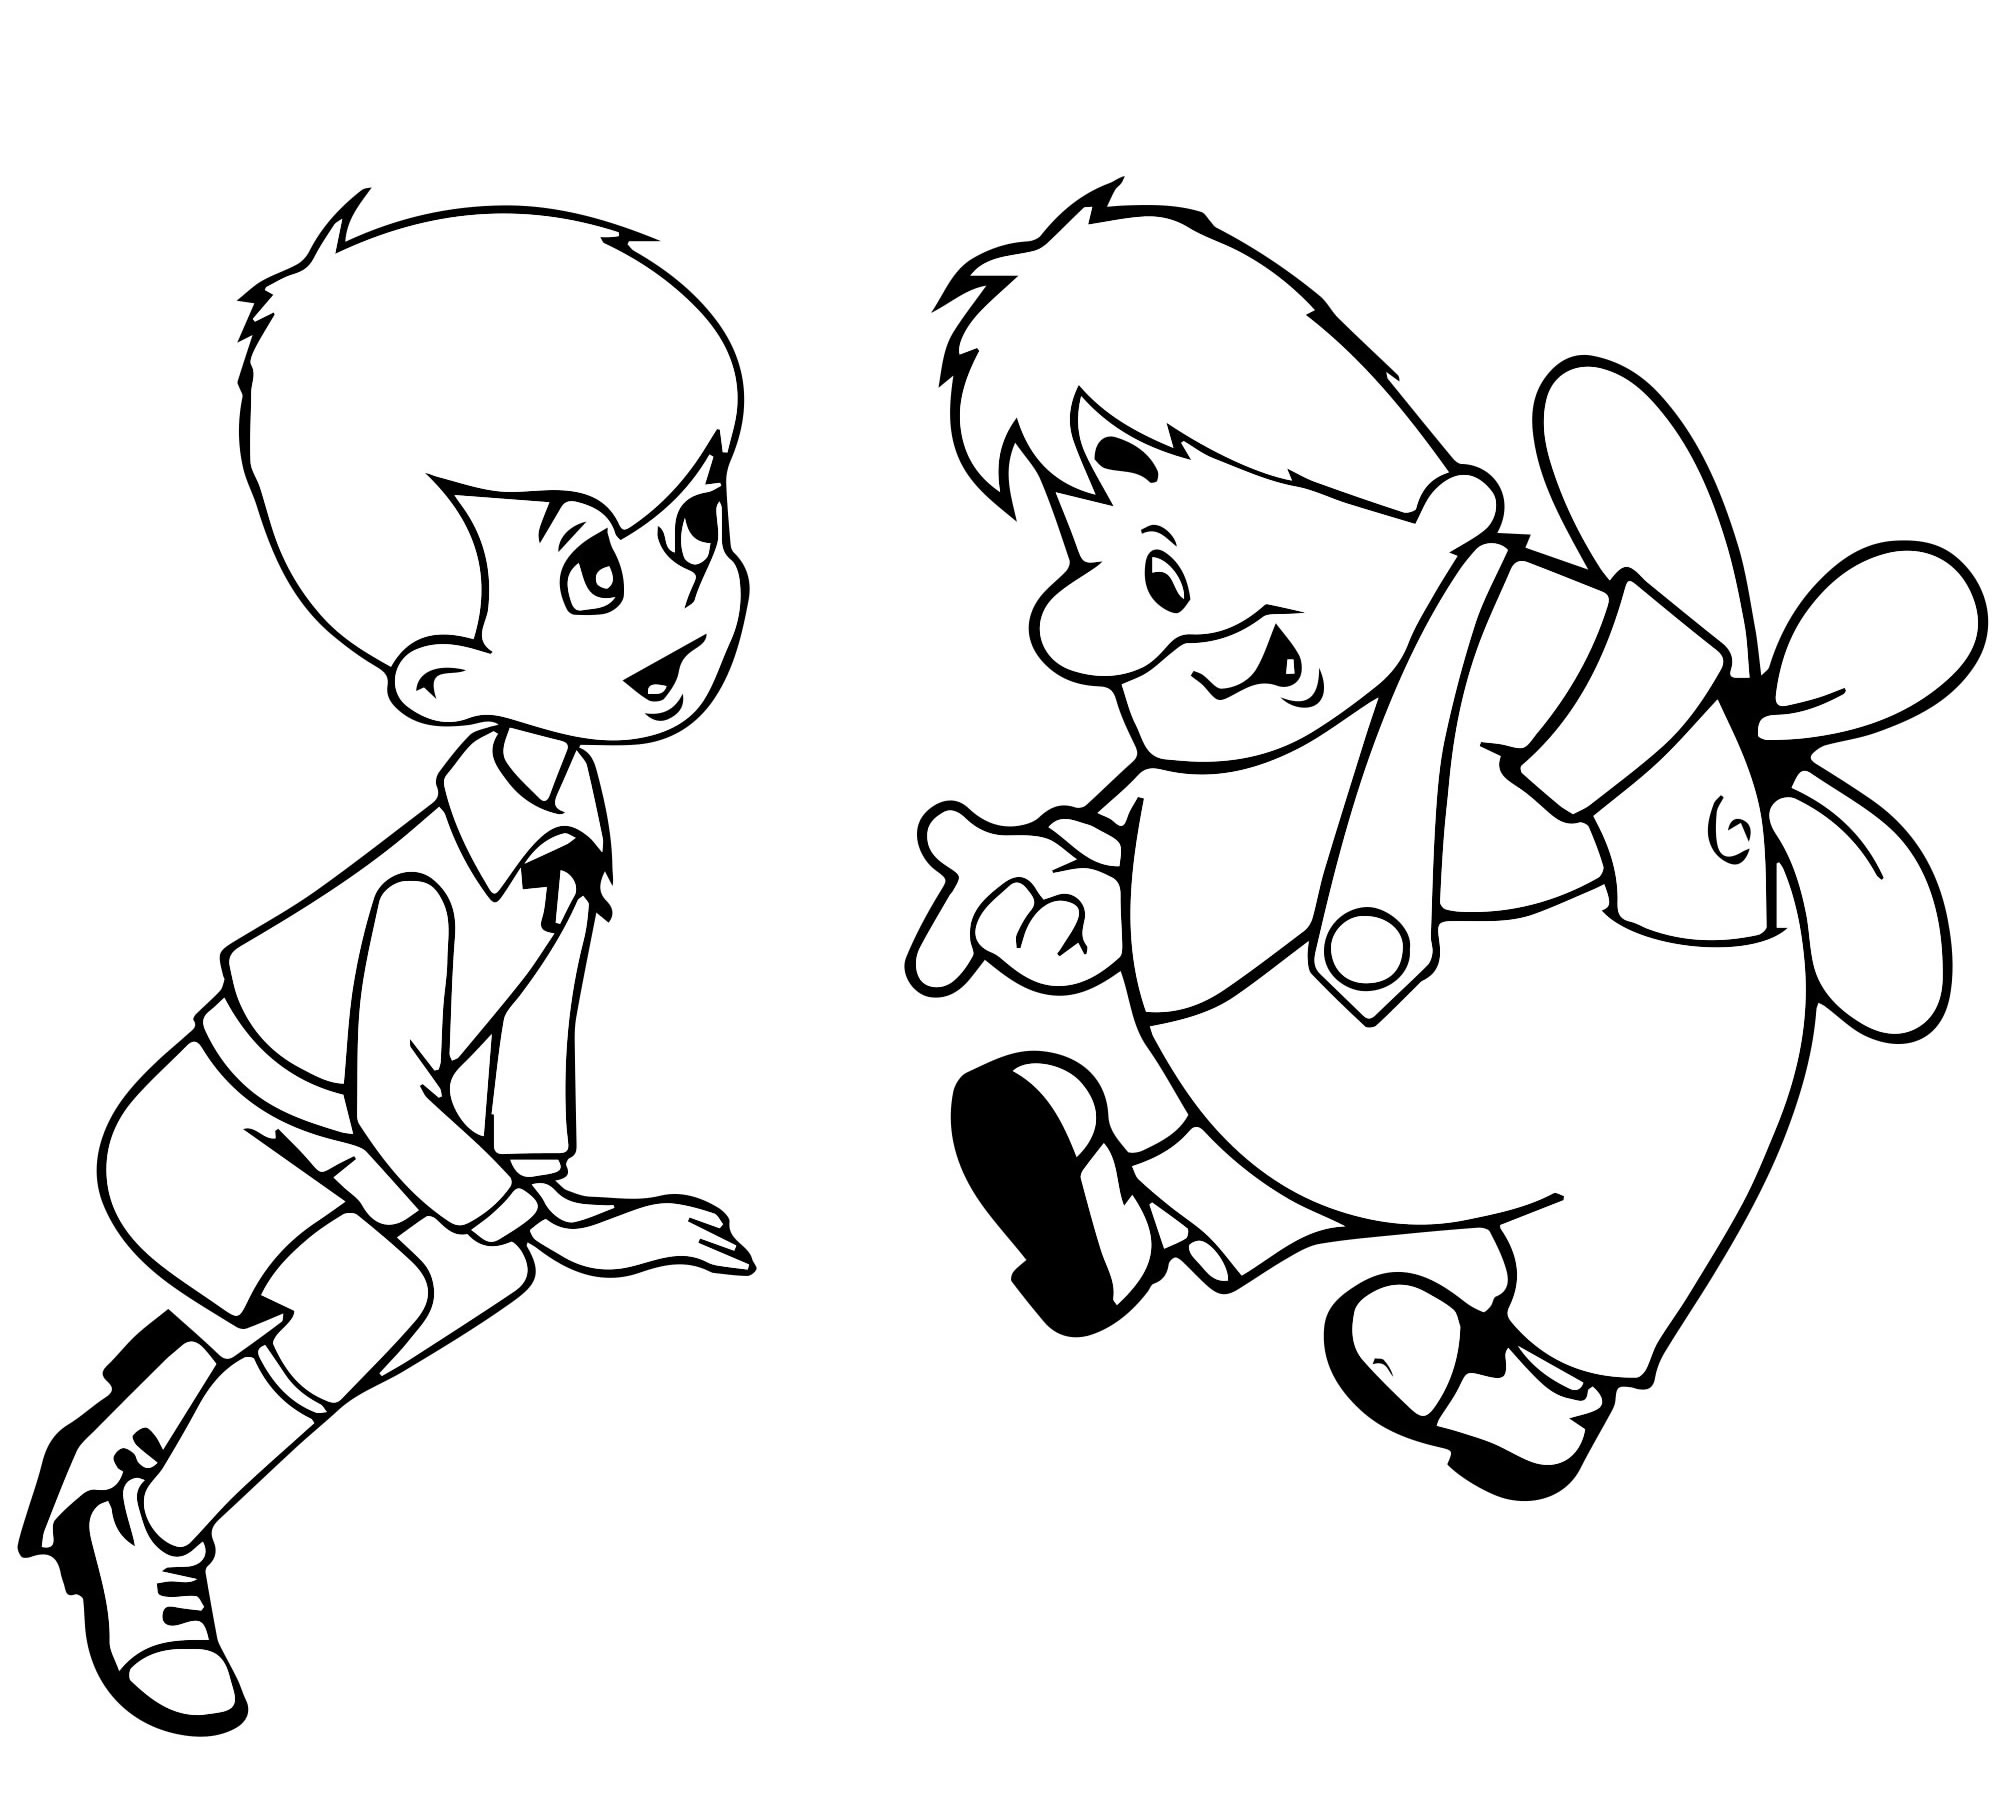 Раскраска Малыш и Карлсон | Раскраски из мультфильма Малыш и Карлсон